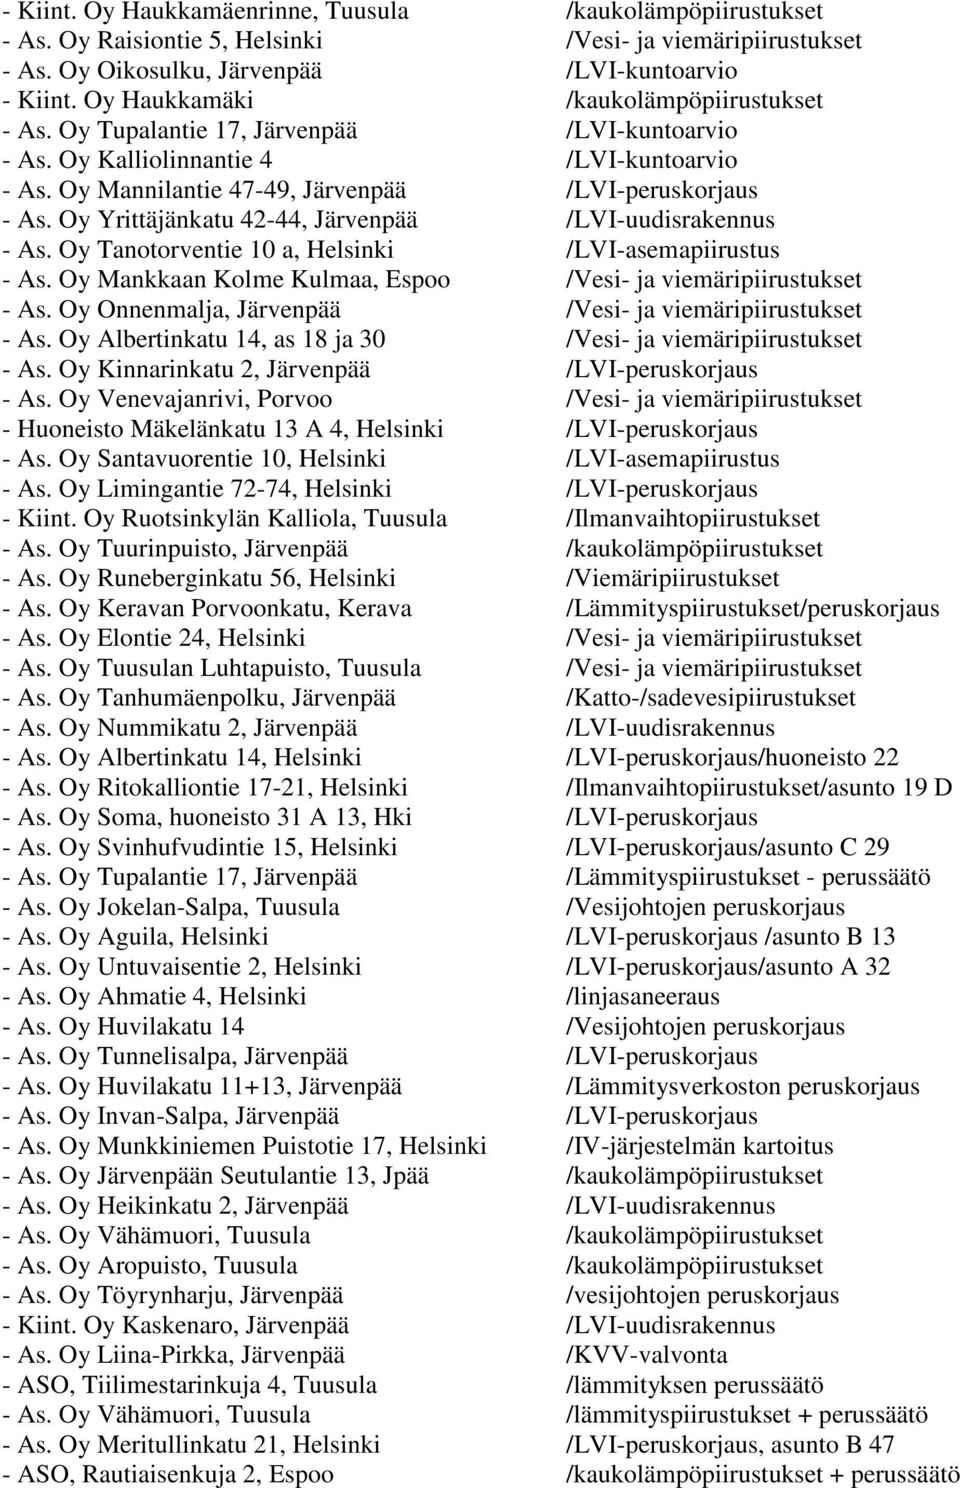 Oy Yrittäjänkatu 42-44, Järvenpää /LVI-uudisrakennus - As. Oy Tanotorventie 10 a, Helsinki /LVI-asemapiirustus - As. Oy Mankkaan Kolme Kulmaa, Espoo /Vesi- ja viemäripiirustukset - As.